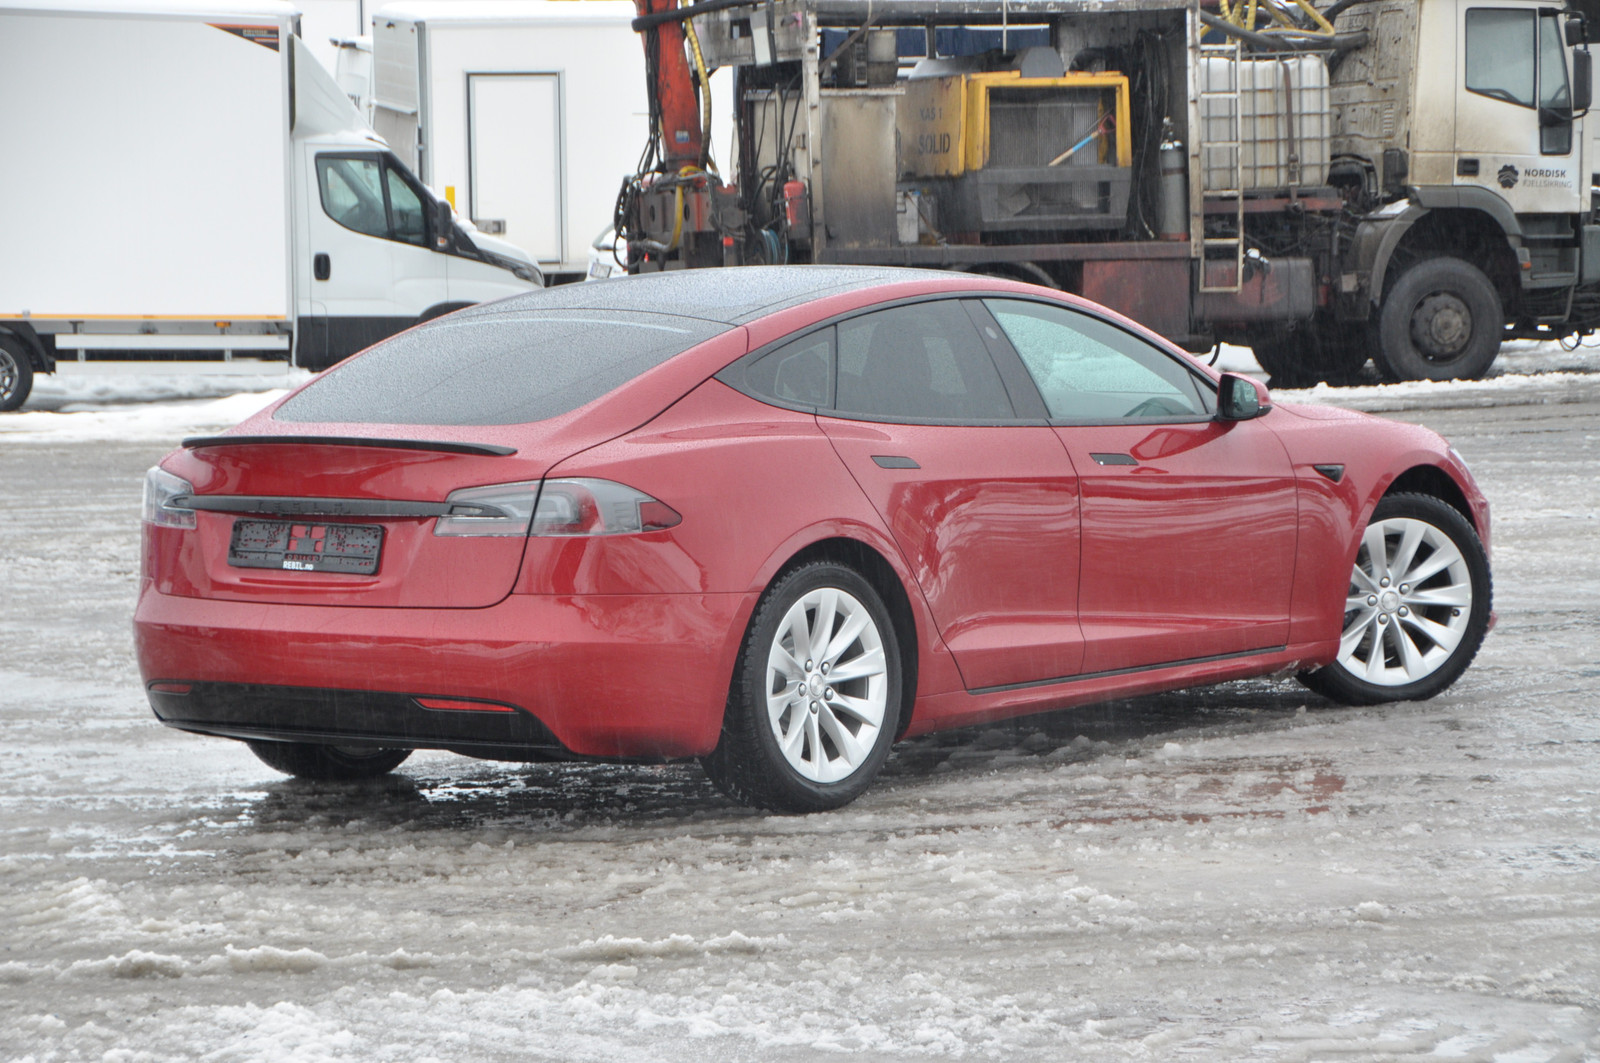 Bilde 10 av Tesla Model S